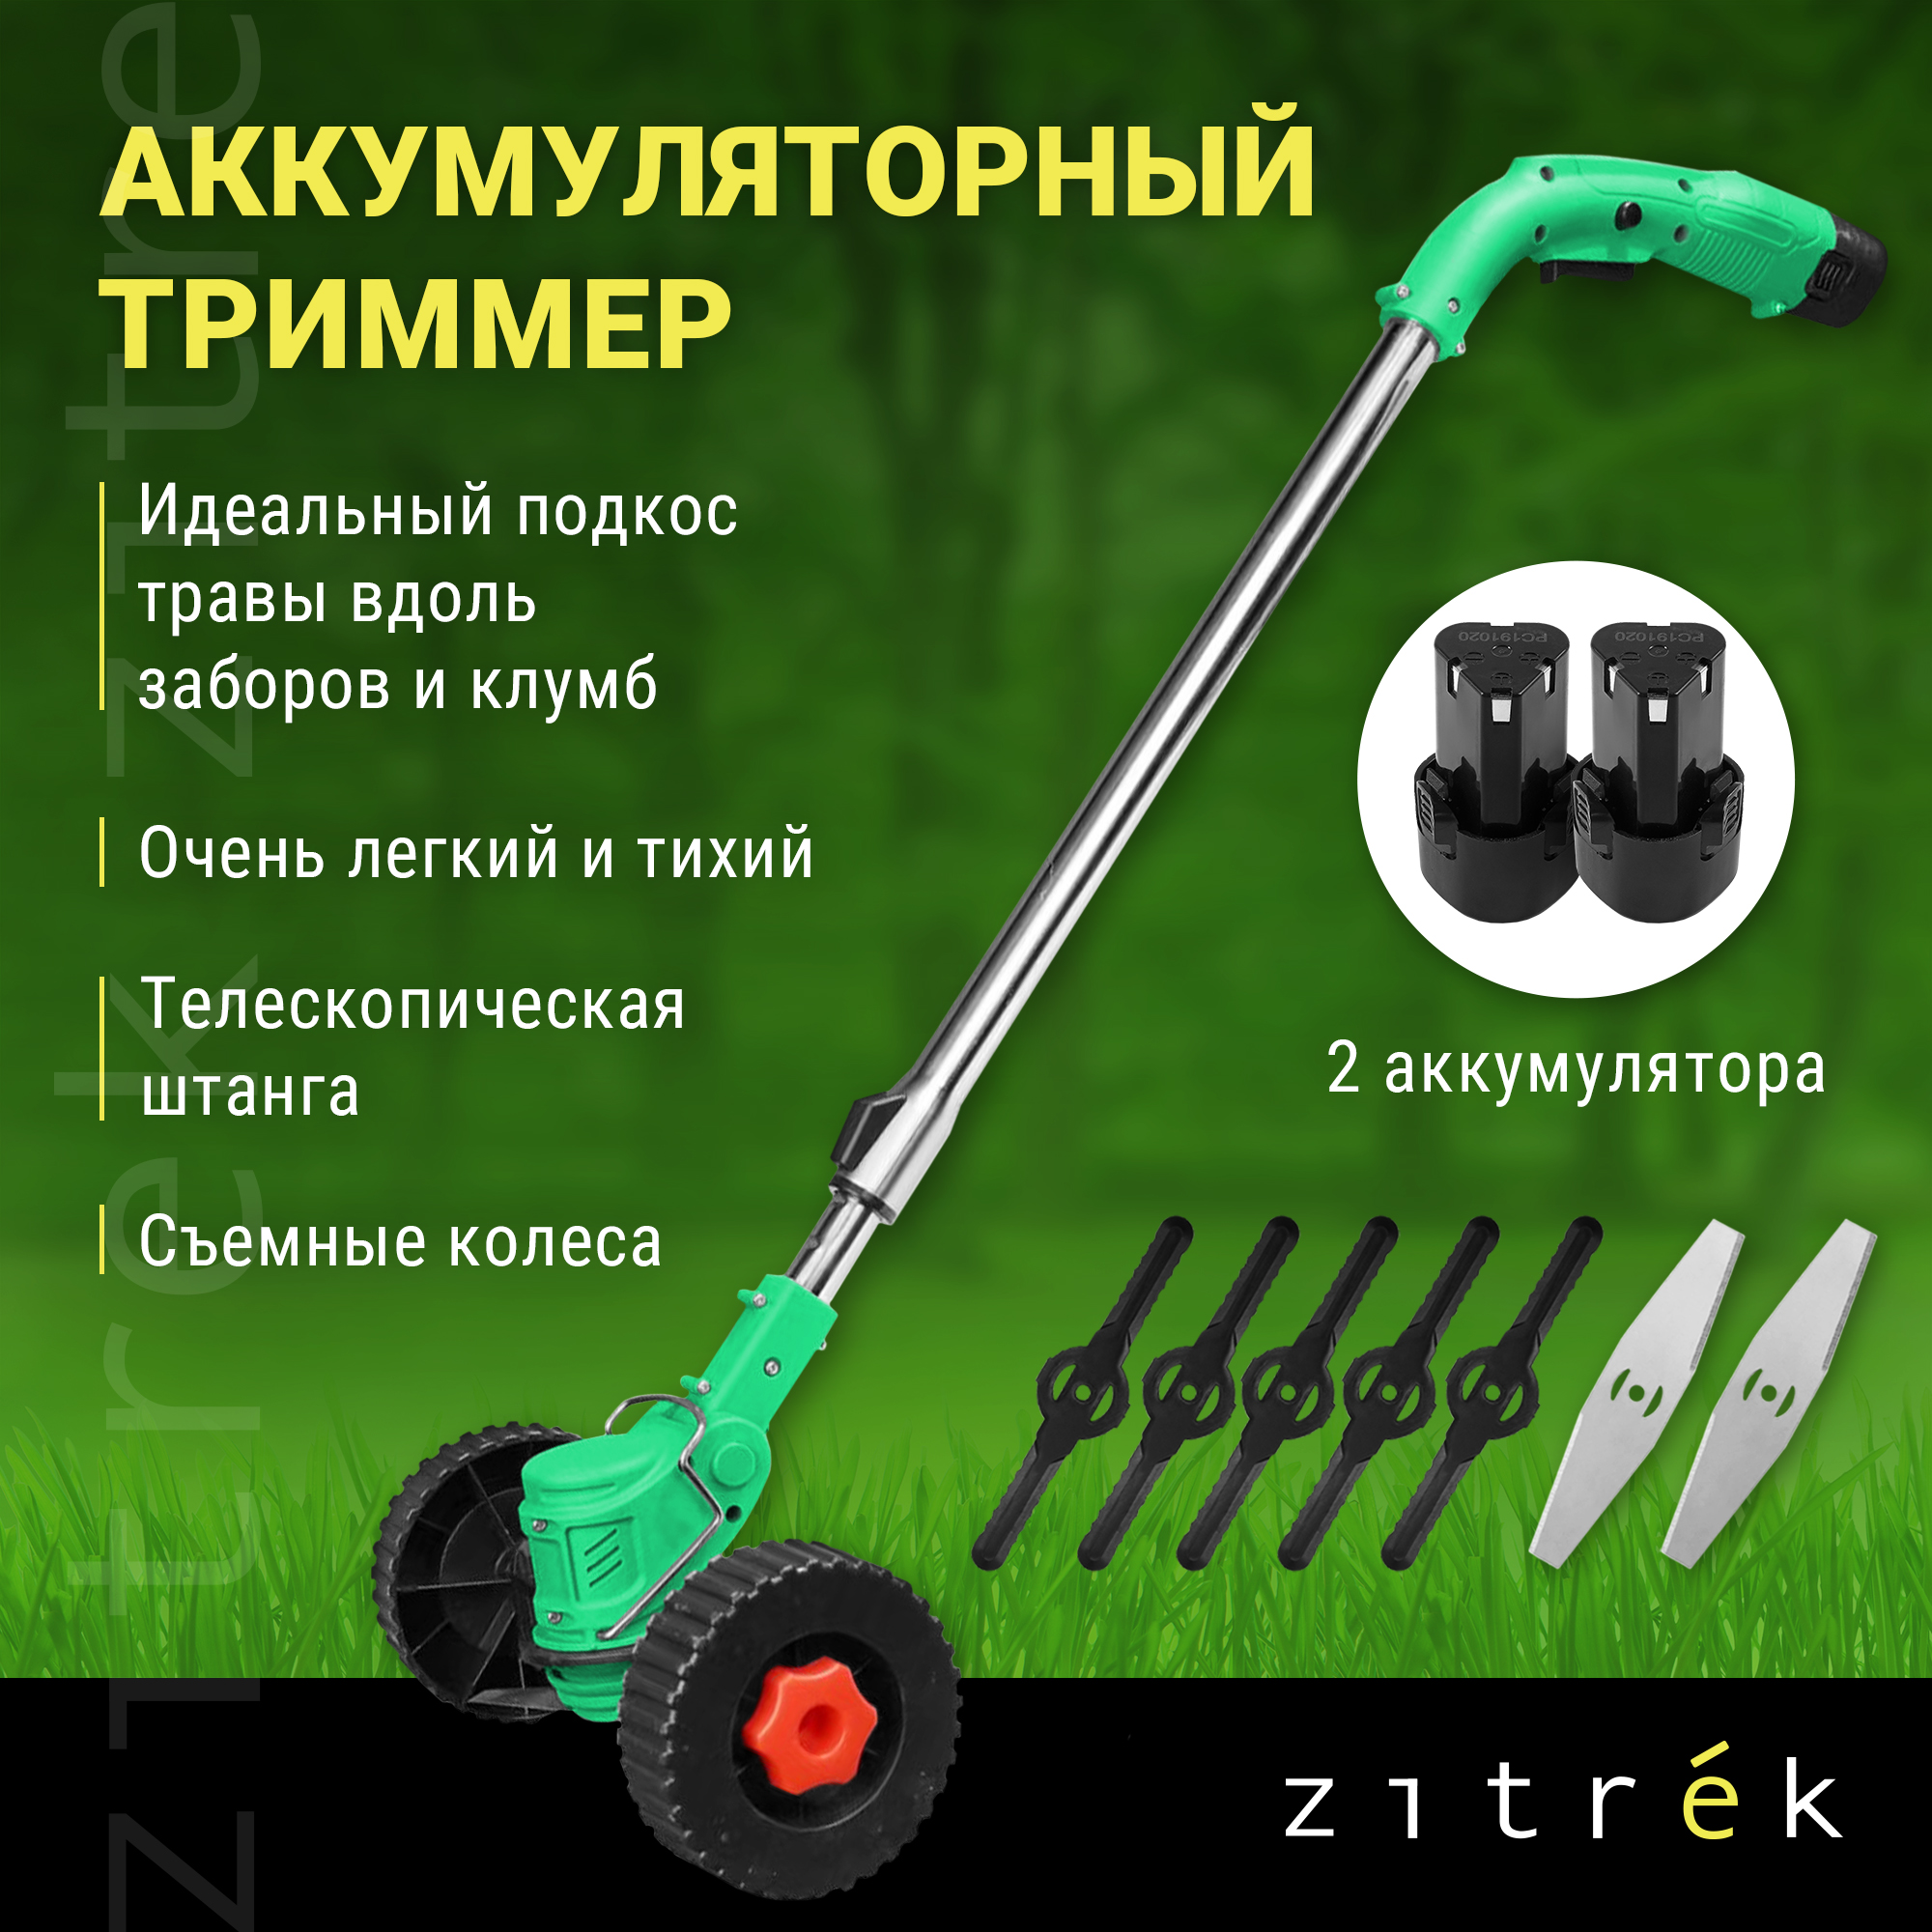 Аккумуляторный триммер-газонокосилка Zitrek GreenCut 12 Pro 082-2004 - купить в Мегамаркет МСК Подольск, цена на Мегамаркет